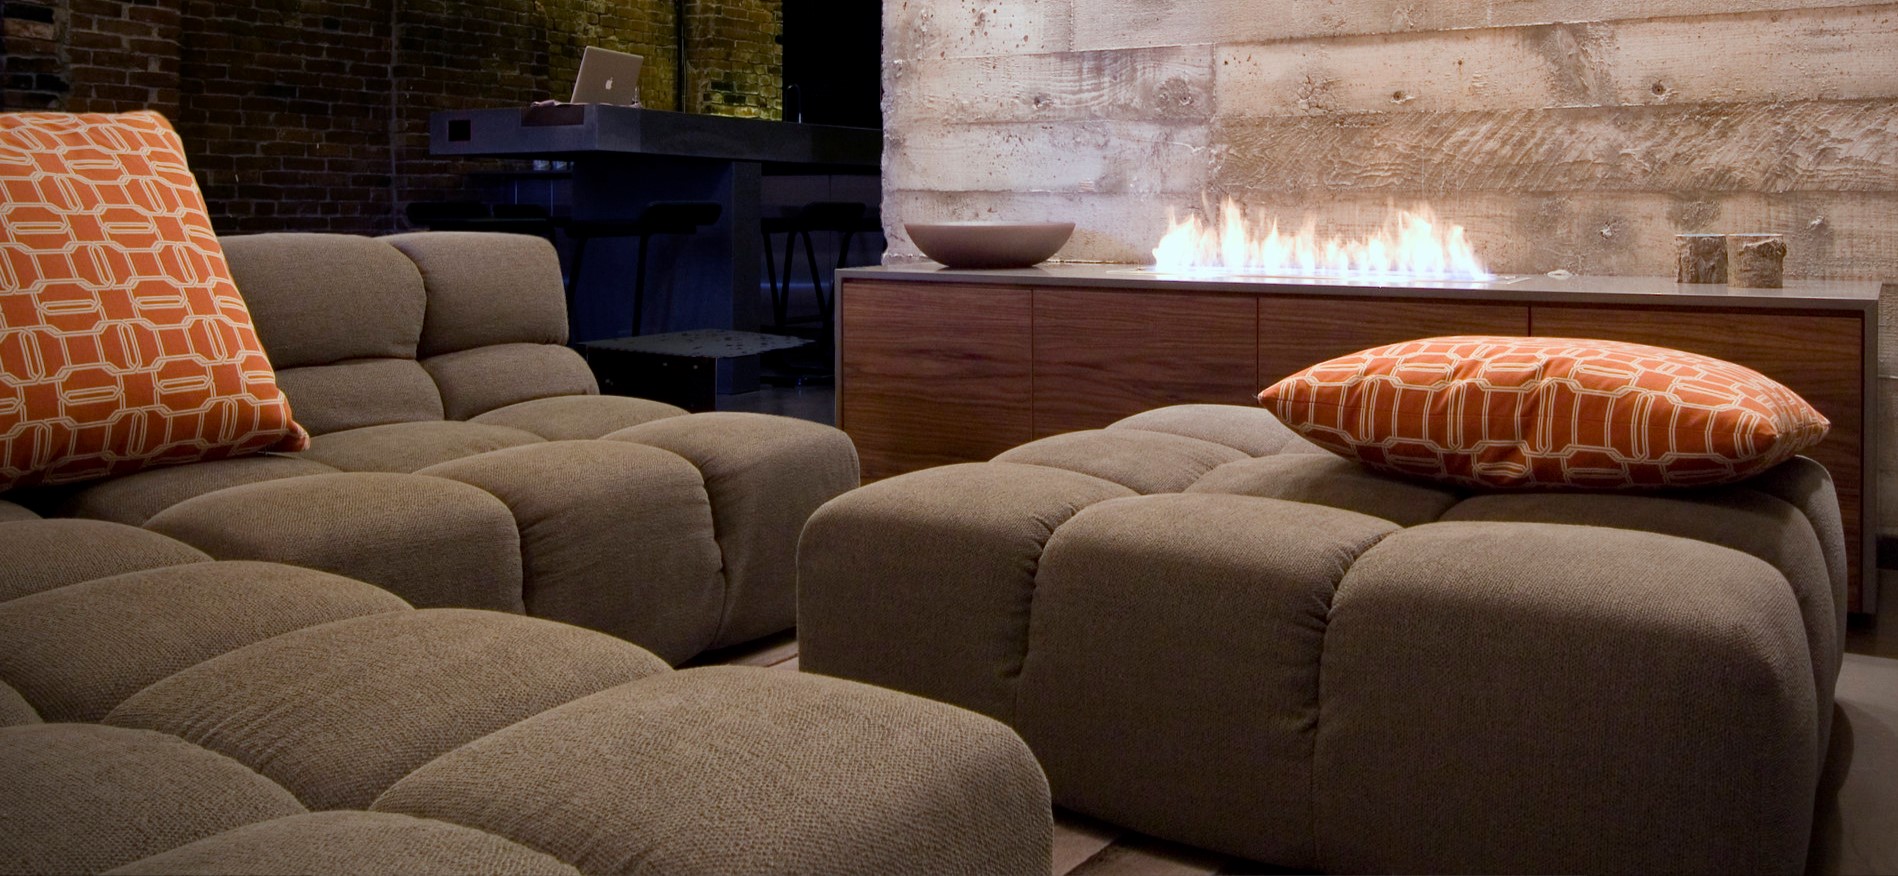 Угловой диван станет стильным интерьерным элементом современной гостиной